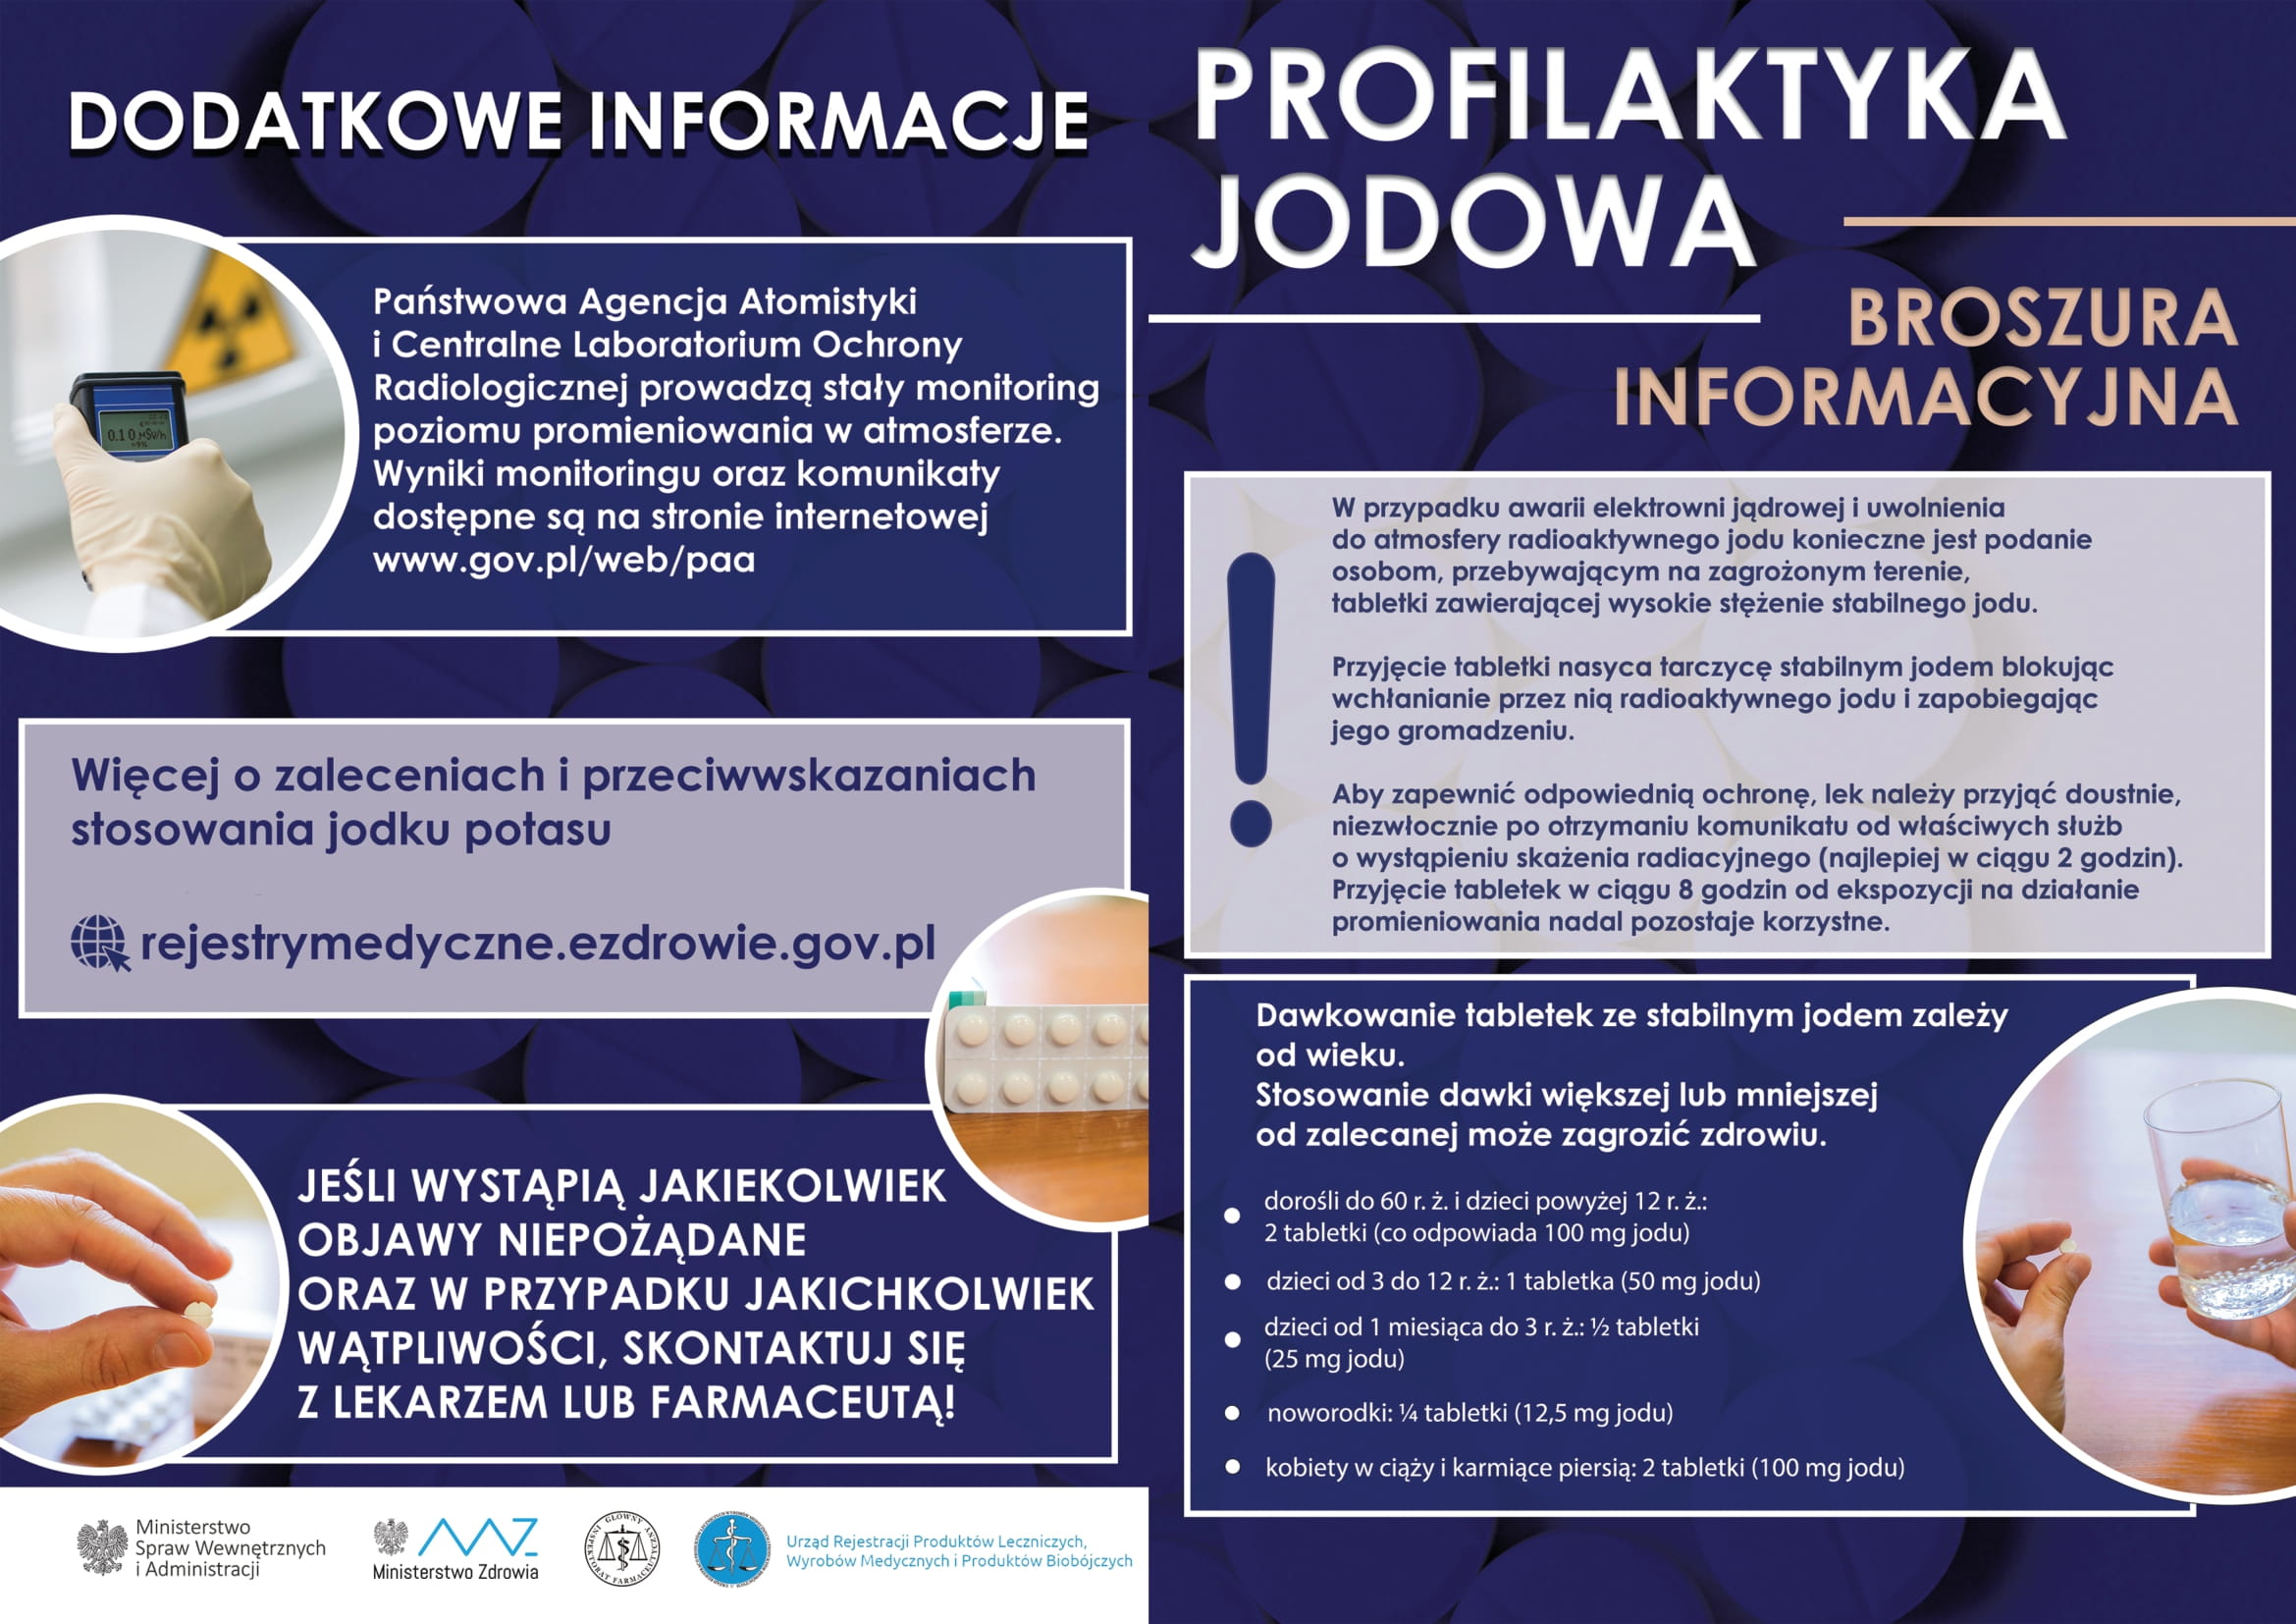 Informacja na temat Profilaktyki Jodowej w sytuacji wystąpienia zdarzenia radiacyjnego oraz miejsc dystrybucji preparatu stabilnego jodu na terenie Gminy Czernica: